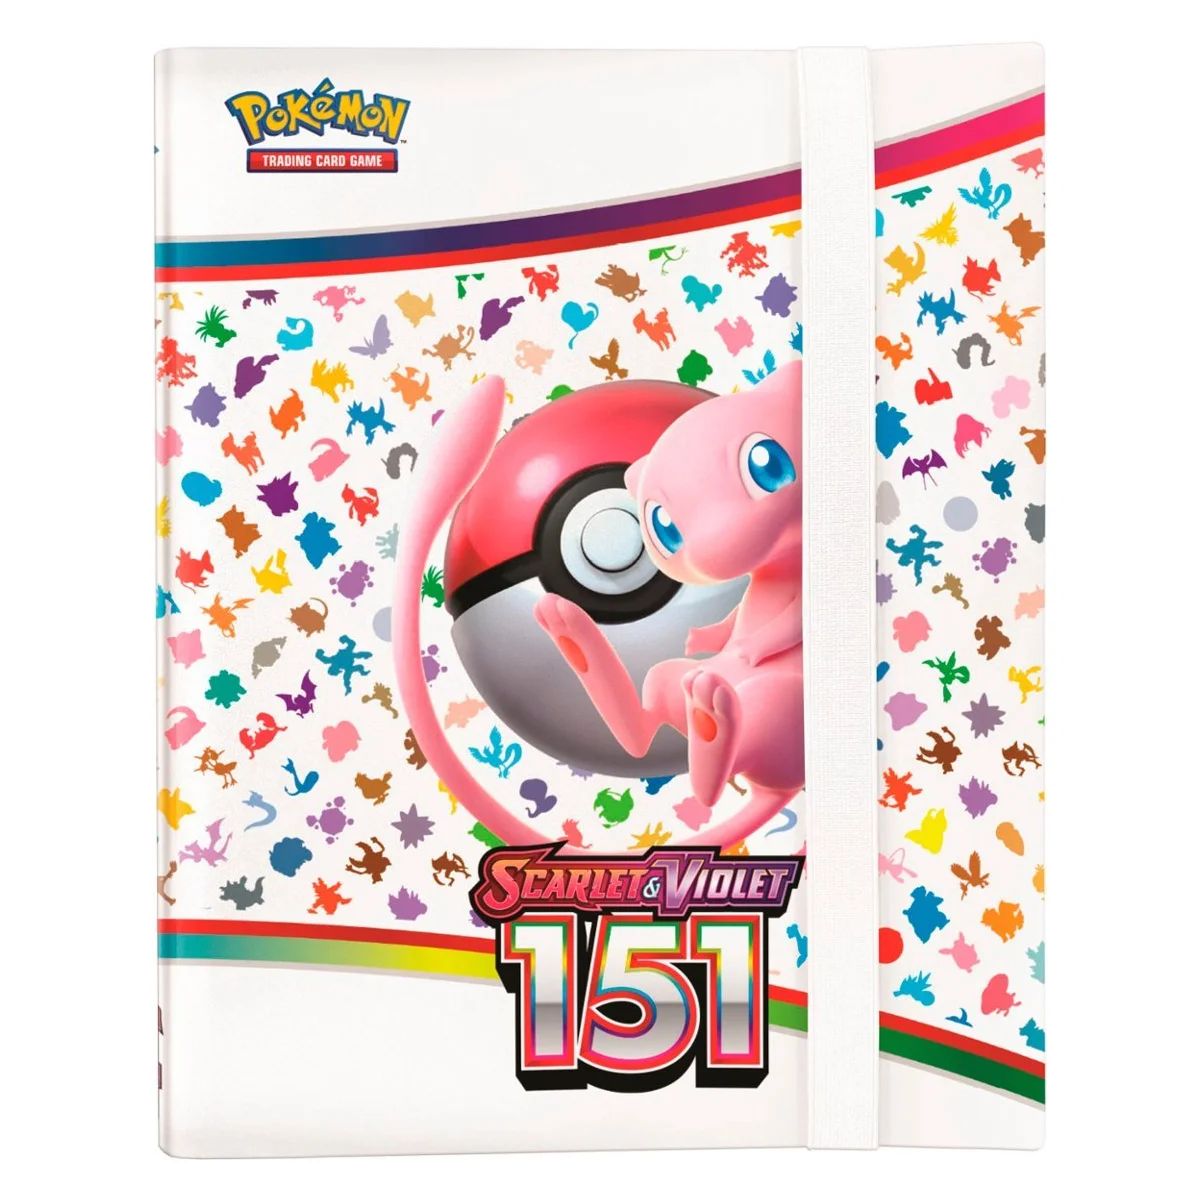 Pokémon - Scarlet & Violet 3.5: 151 - Binder Collection EN